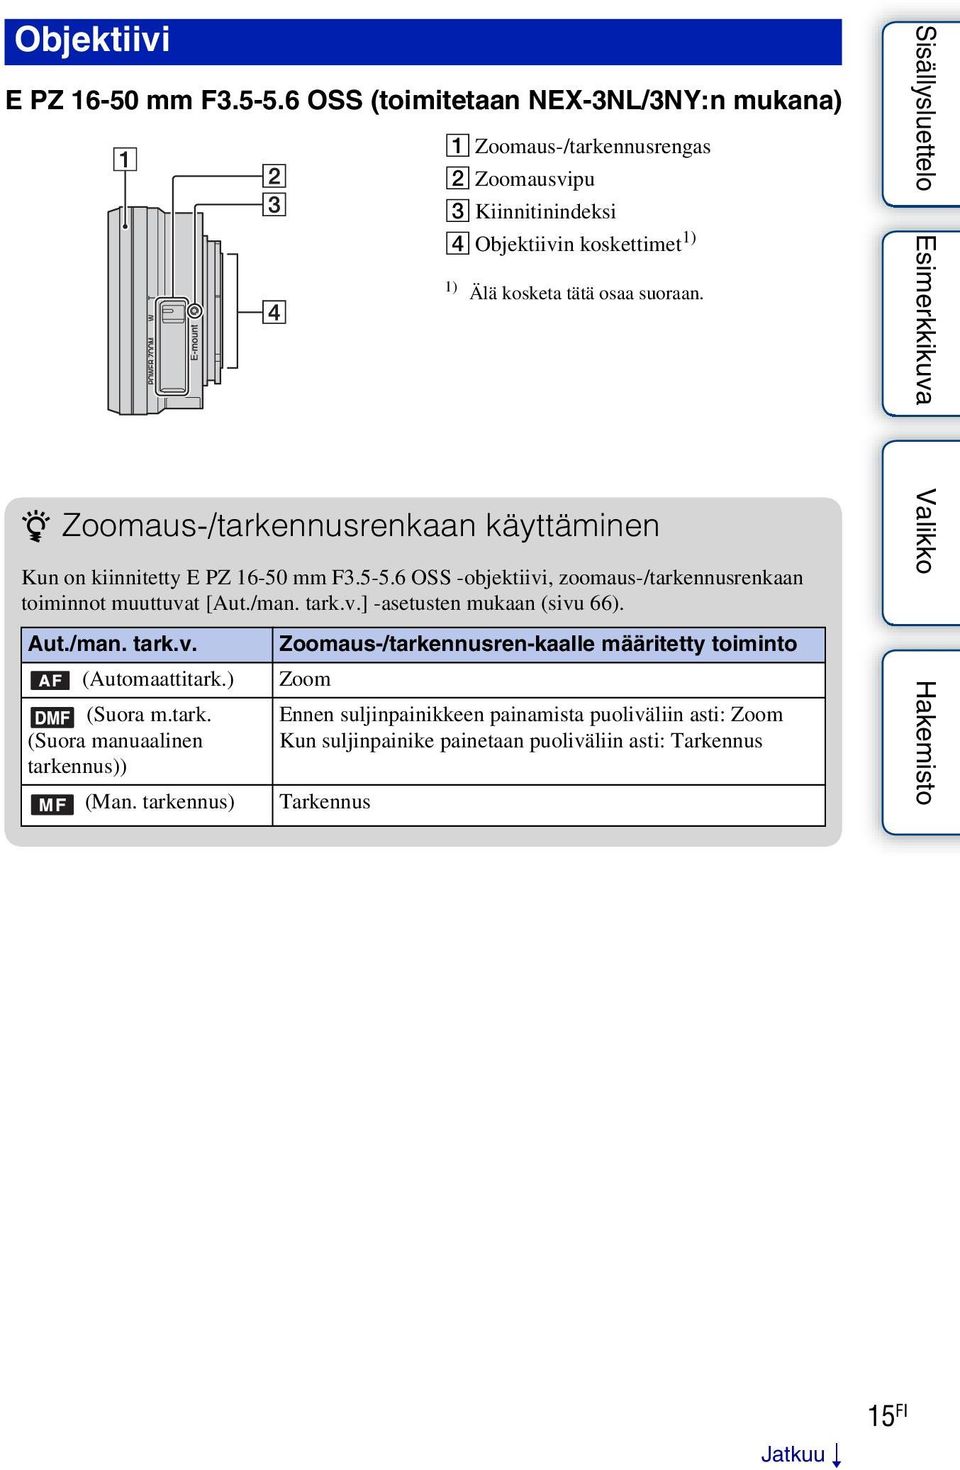 z Zoomaus-/tarkennusrenkaan käyttäminen Kun on kiinnitetty E PZ 16-50 mm F3.5-5.6 OSS -objektiivi, zoomaus-/tarkennusrenkaan toiminnot muuttuvat [Aut./man. tark.v.] -asetusten mukaan (sivu 66).